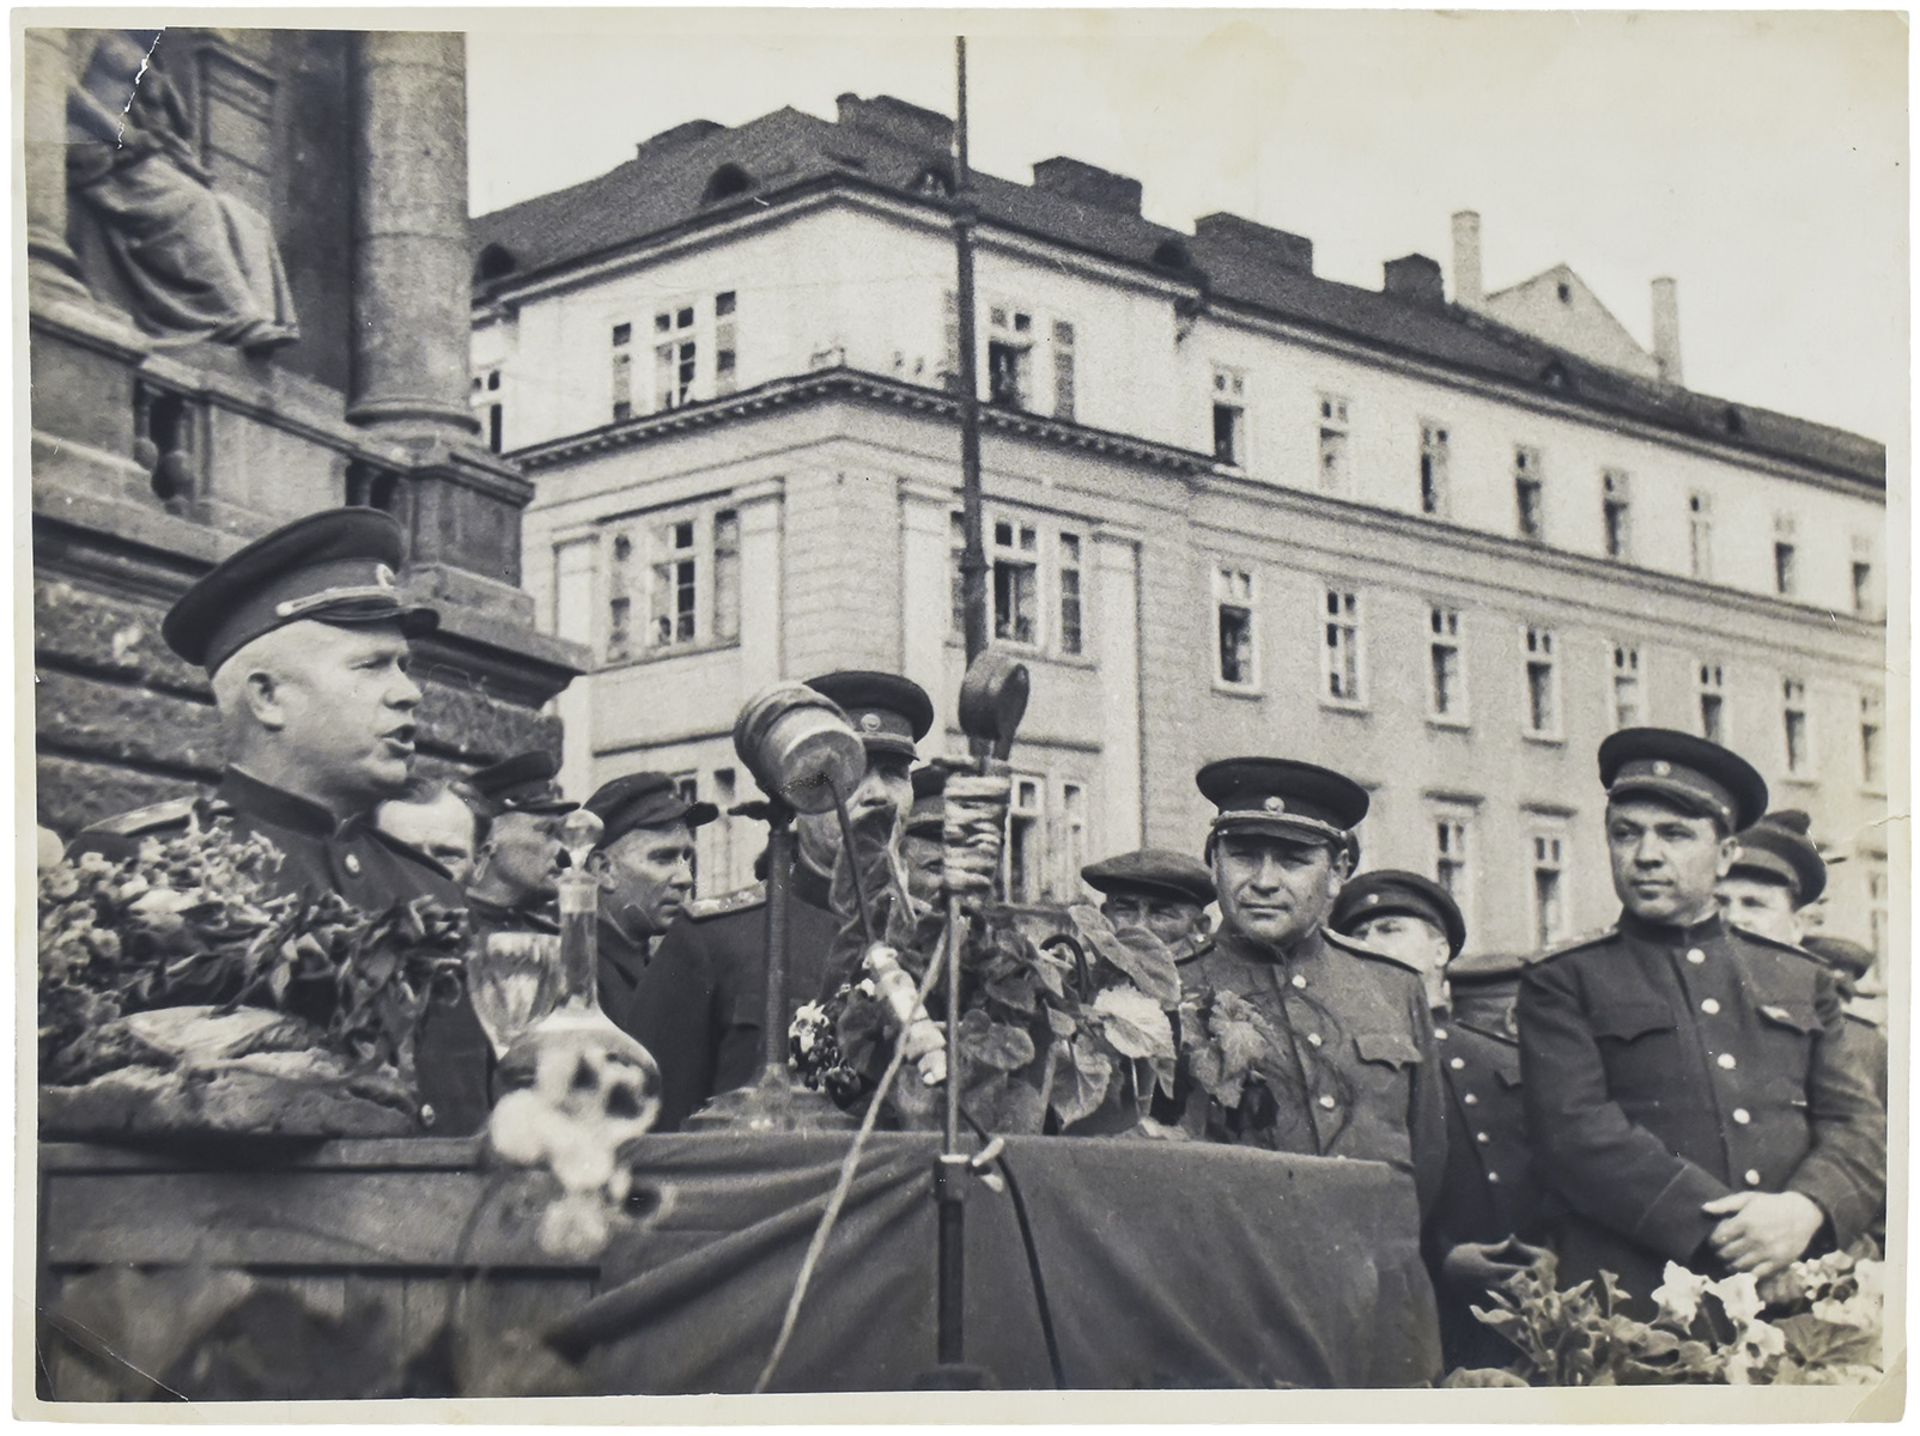 Nikita Khrushchev on demonstration in Kyiv. Photograph. 1944. 18x24 cm.